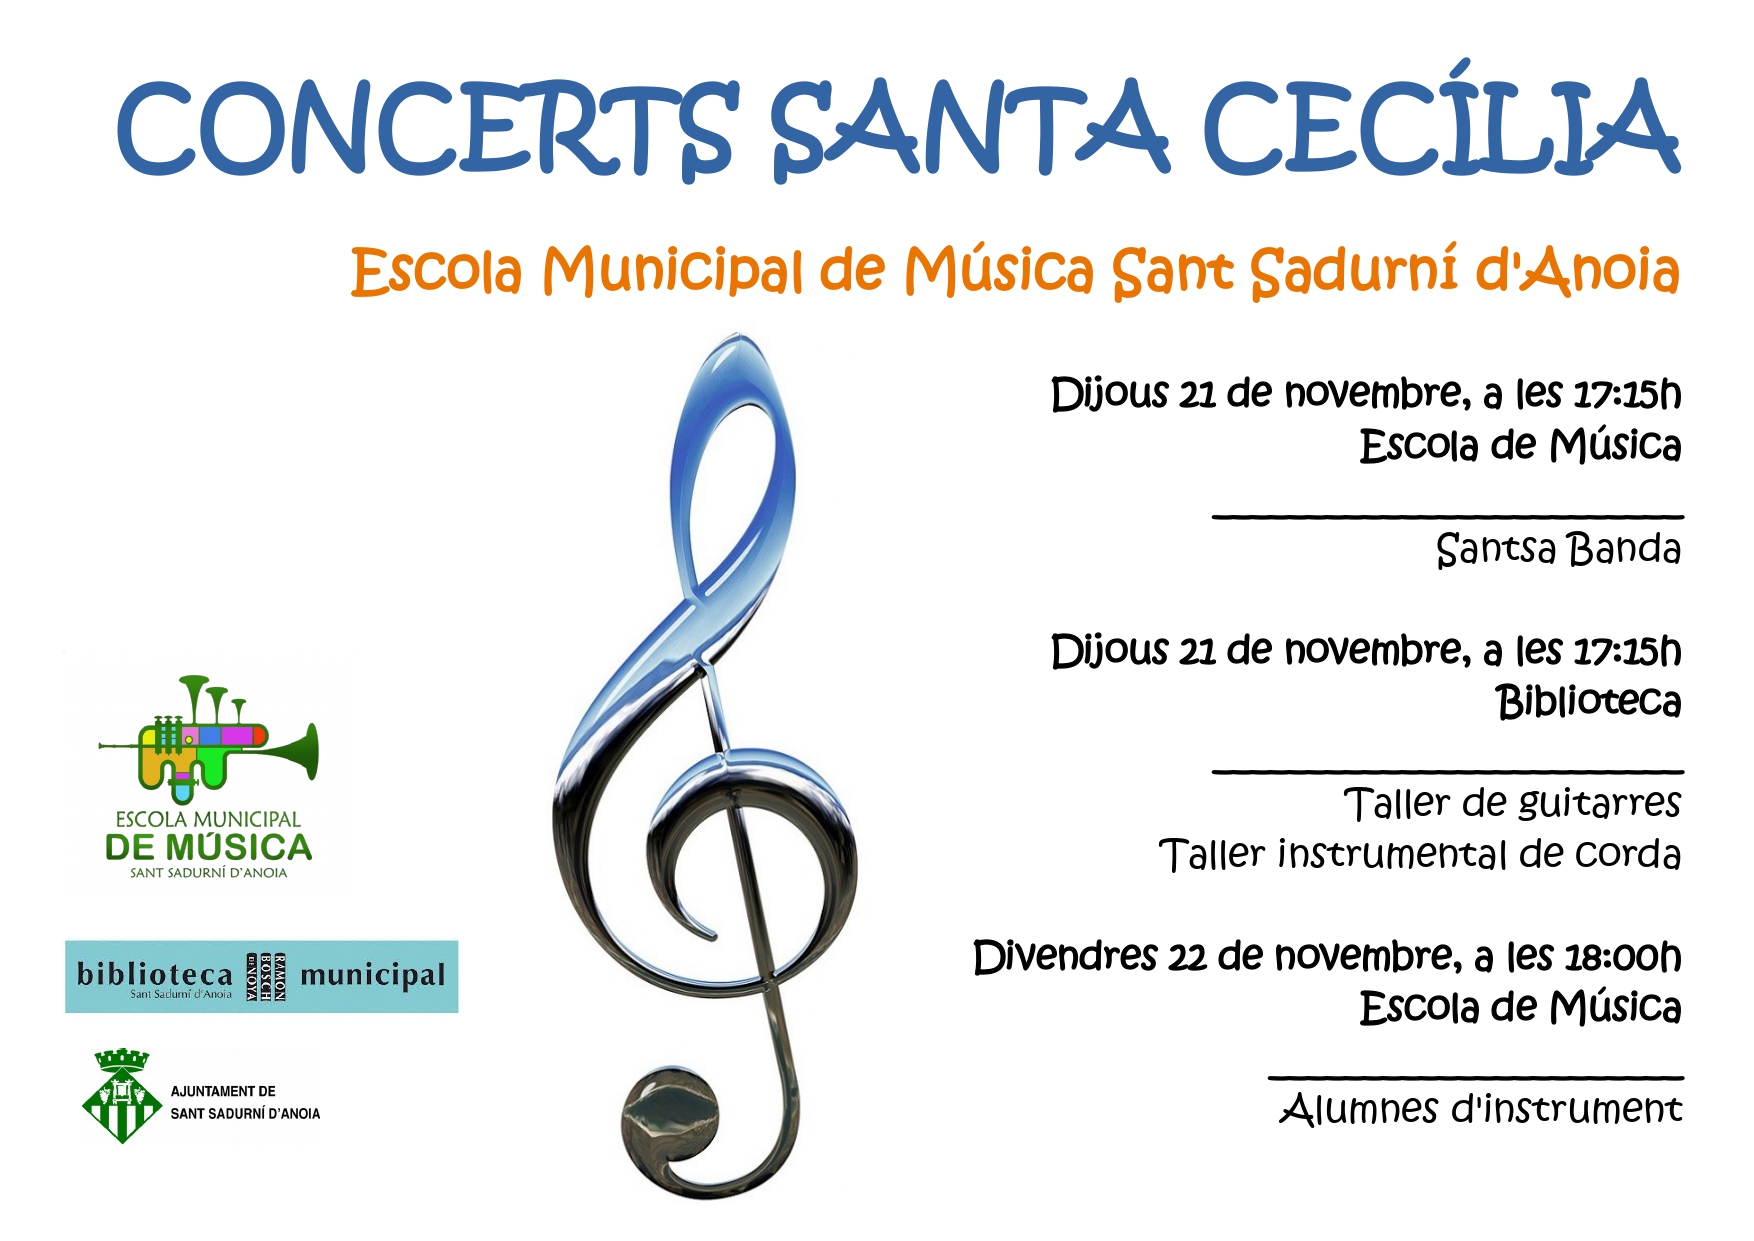 Pster Concerts Santa Ceclia